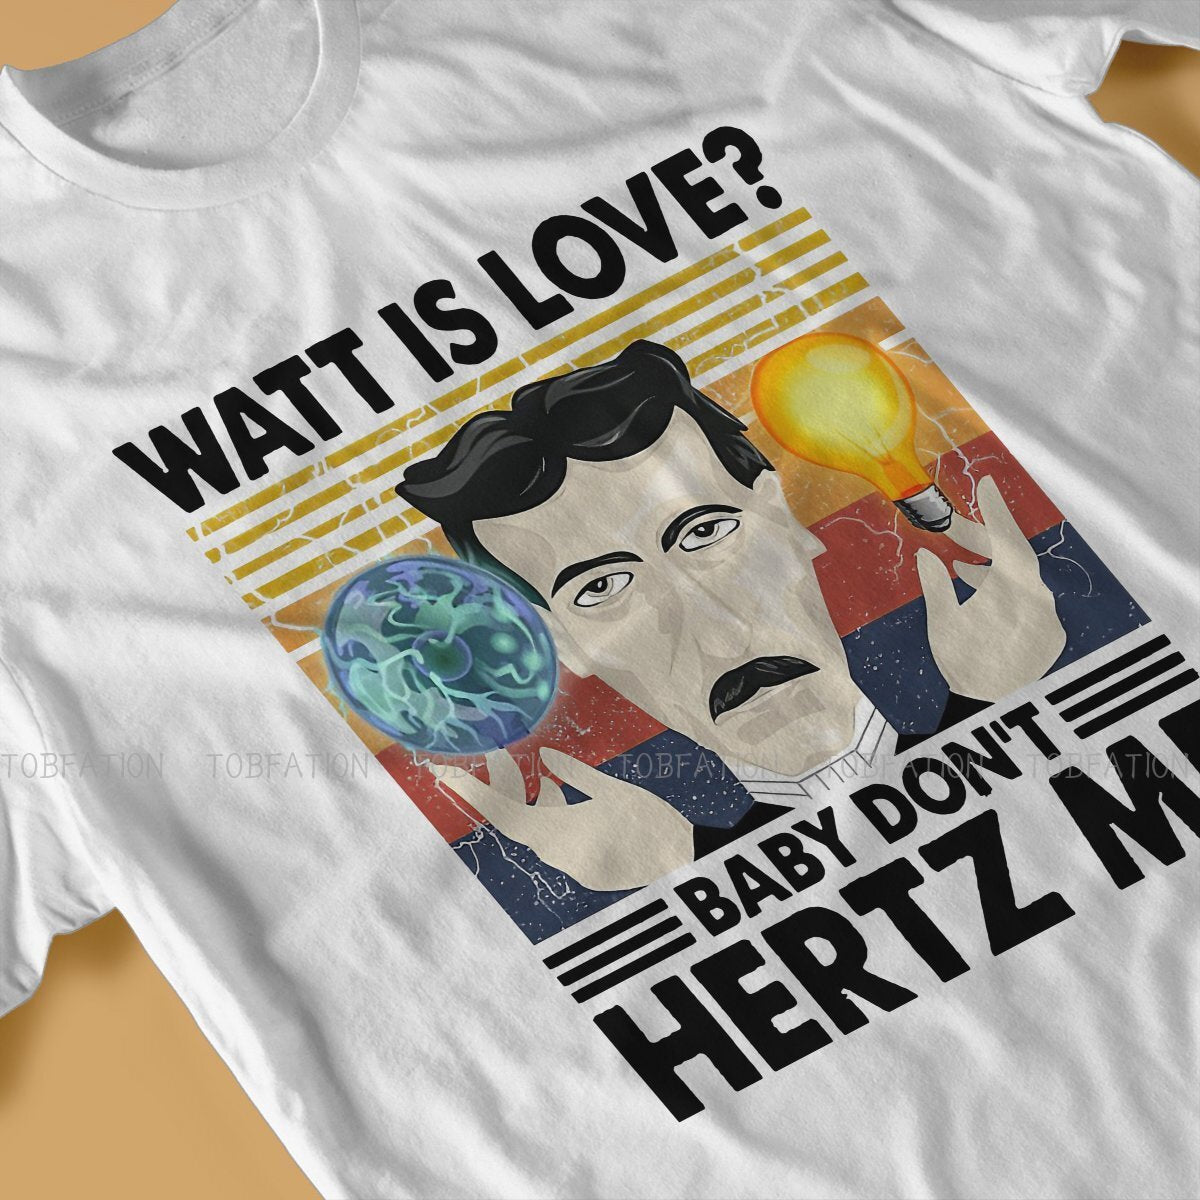 Nikola Tesla Watt is Love  T-Shirt